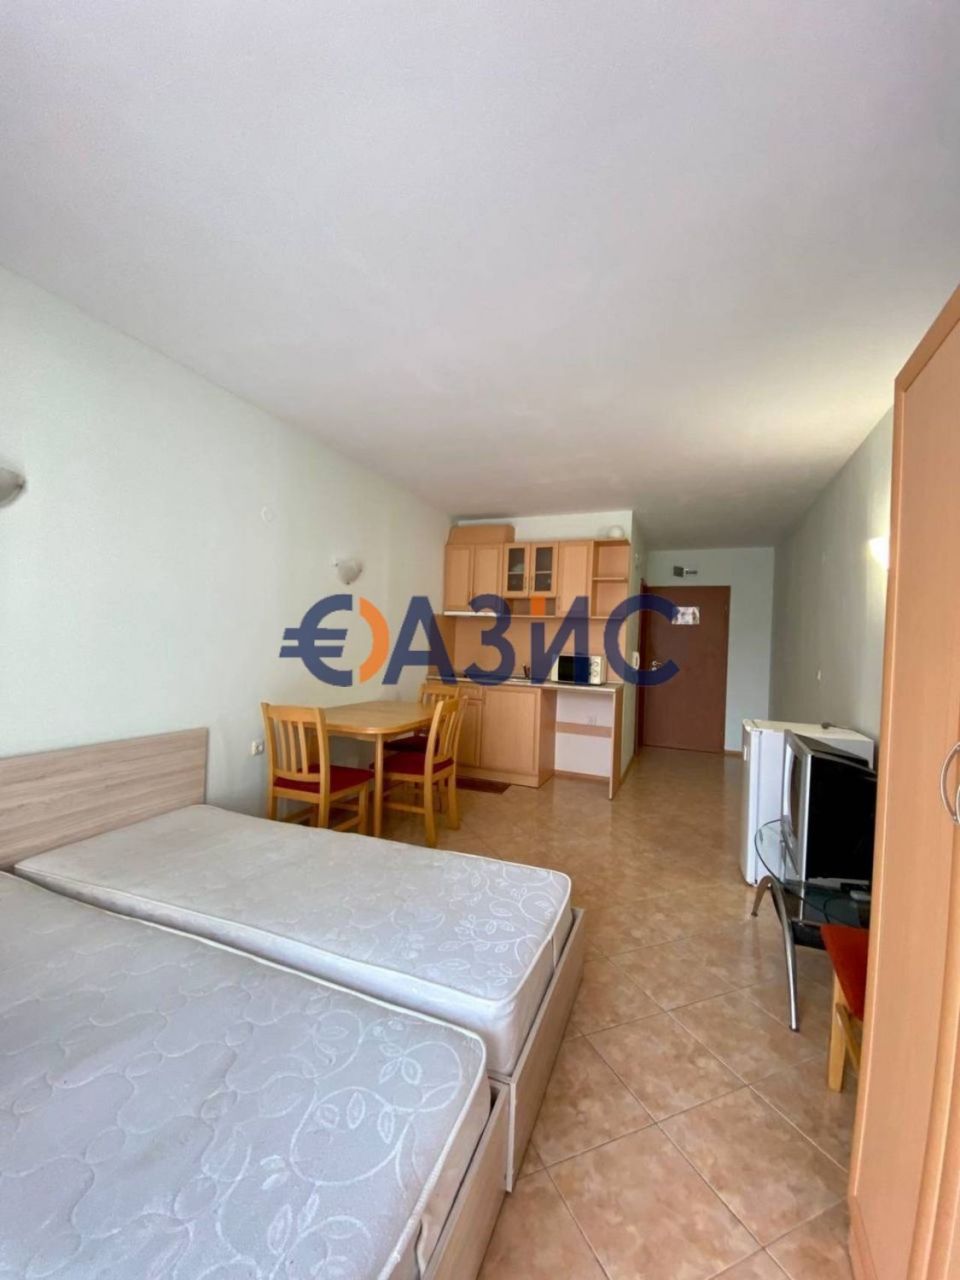 Apartment at Sunny Beach, Bulgaria, 36 sq.m - picture 1